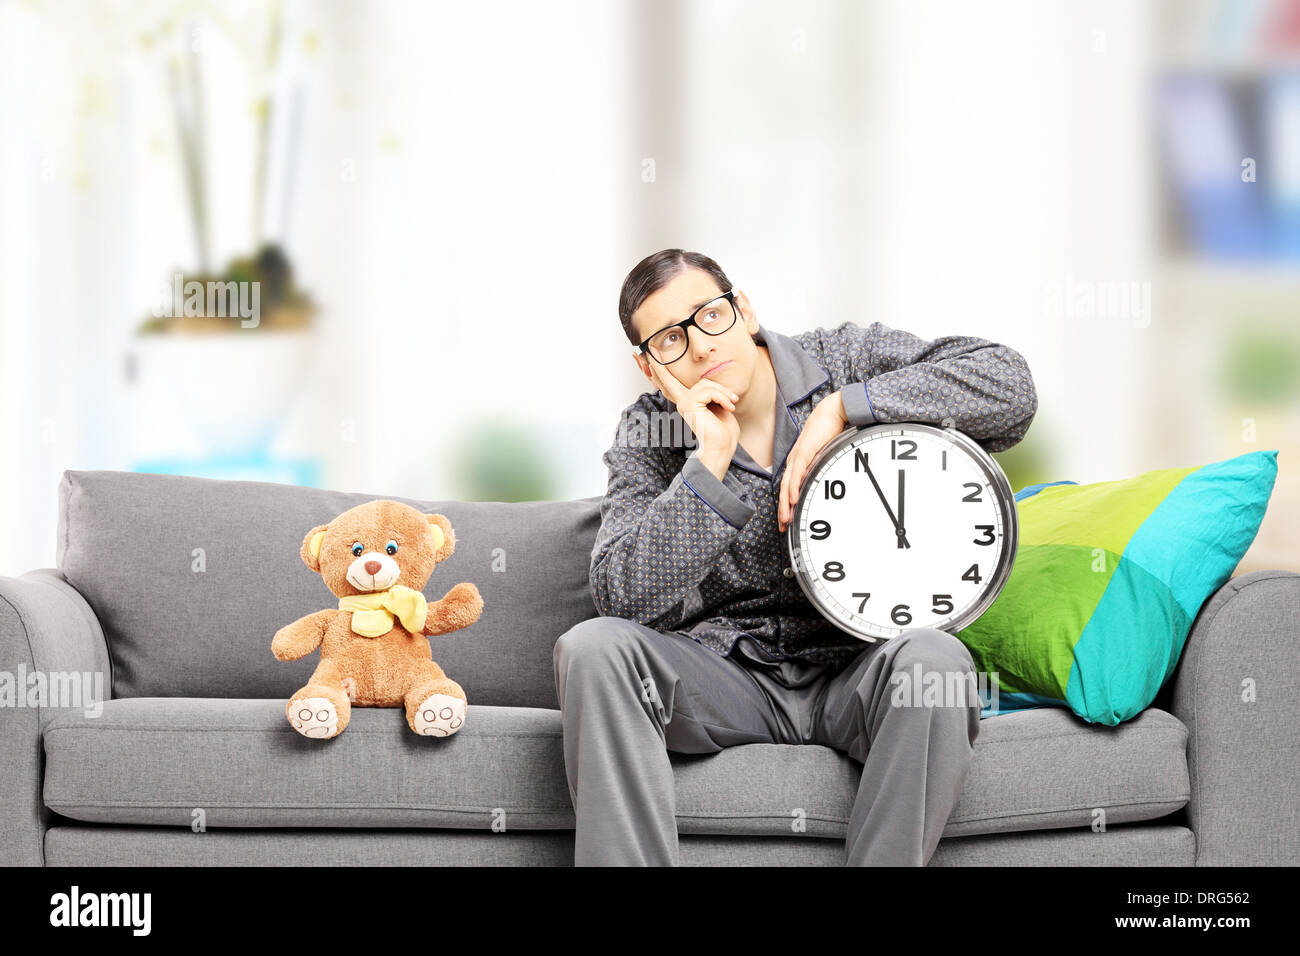 Junger Mann im Pyjama hält eine große Wanduhr, sitzen auf der Couch mit Teddybär neben ihm, zu Hause Stockfoto